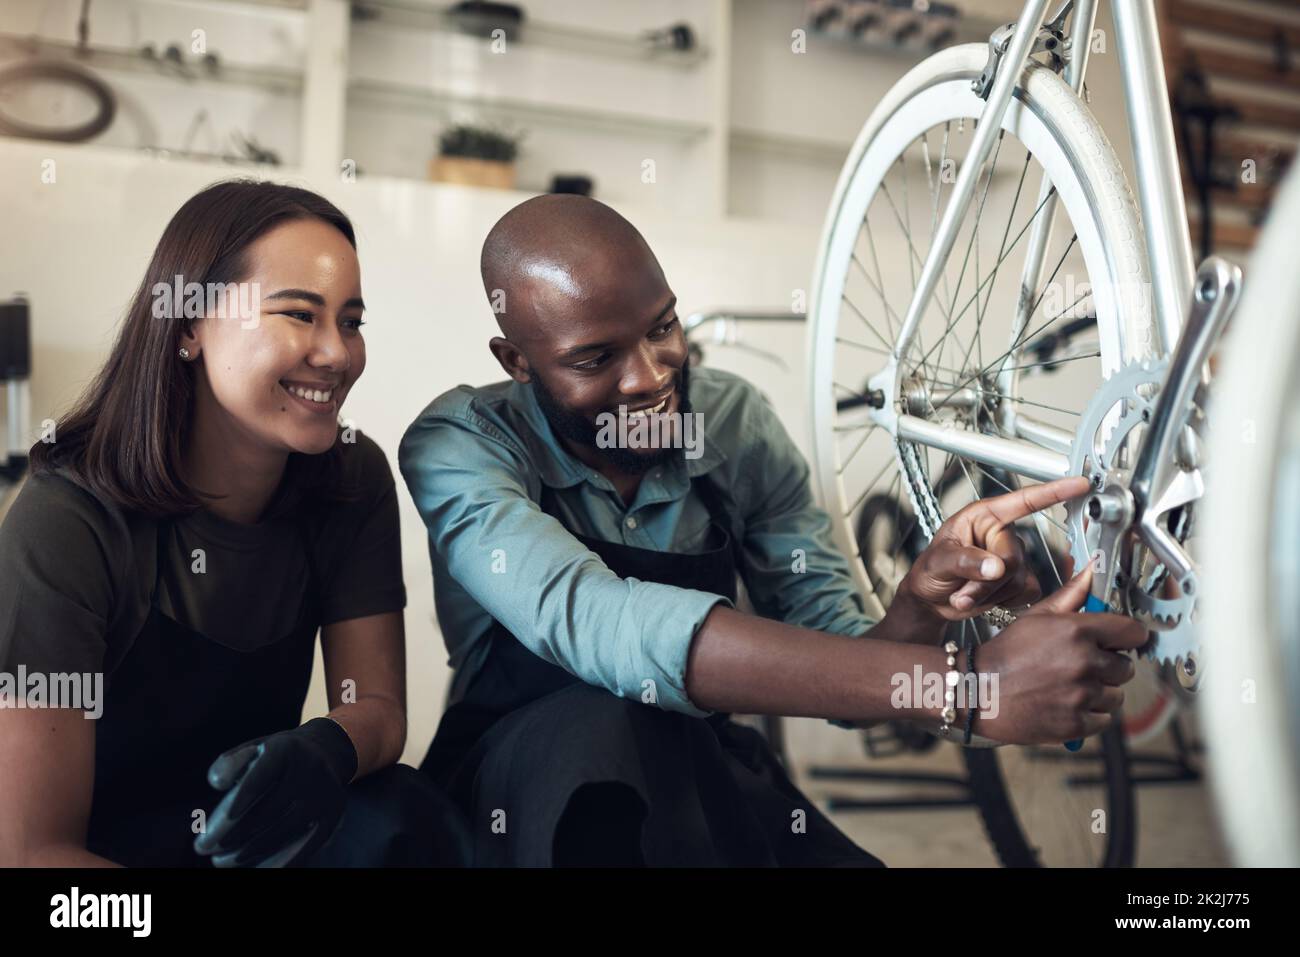 J'ai réparé ça. Photo de deux jeunes propriétaires d'entreprise qui se sont accroués dans leur boutique et ont fixé une roue de vélo. Banque D'Images